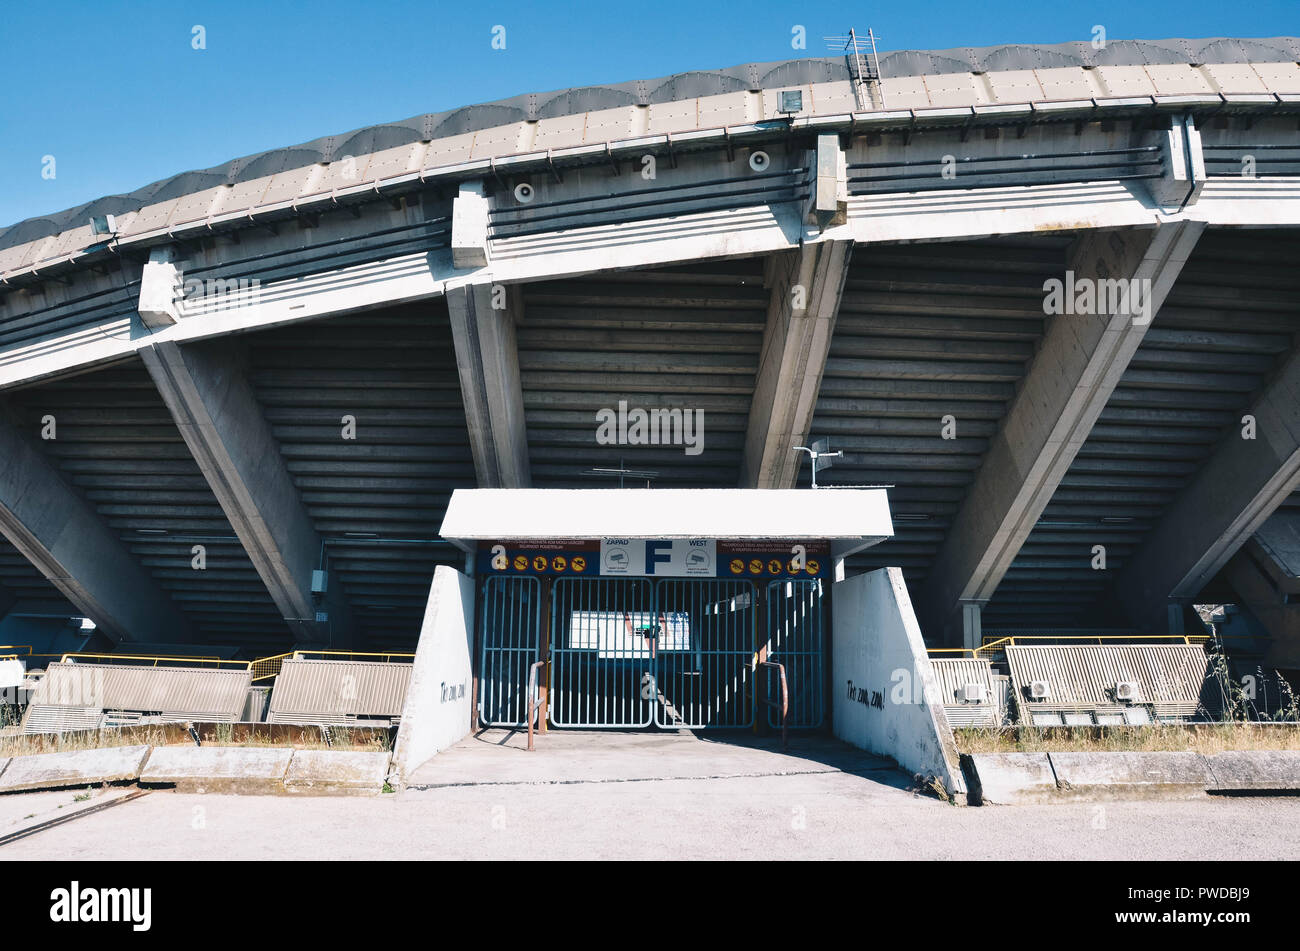 Exterior of the Poljud stadium, home of Hadjuk Split football club, Split, Croatia, September 2018 Stock Photo